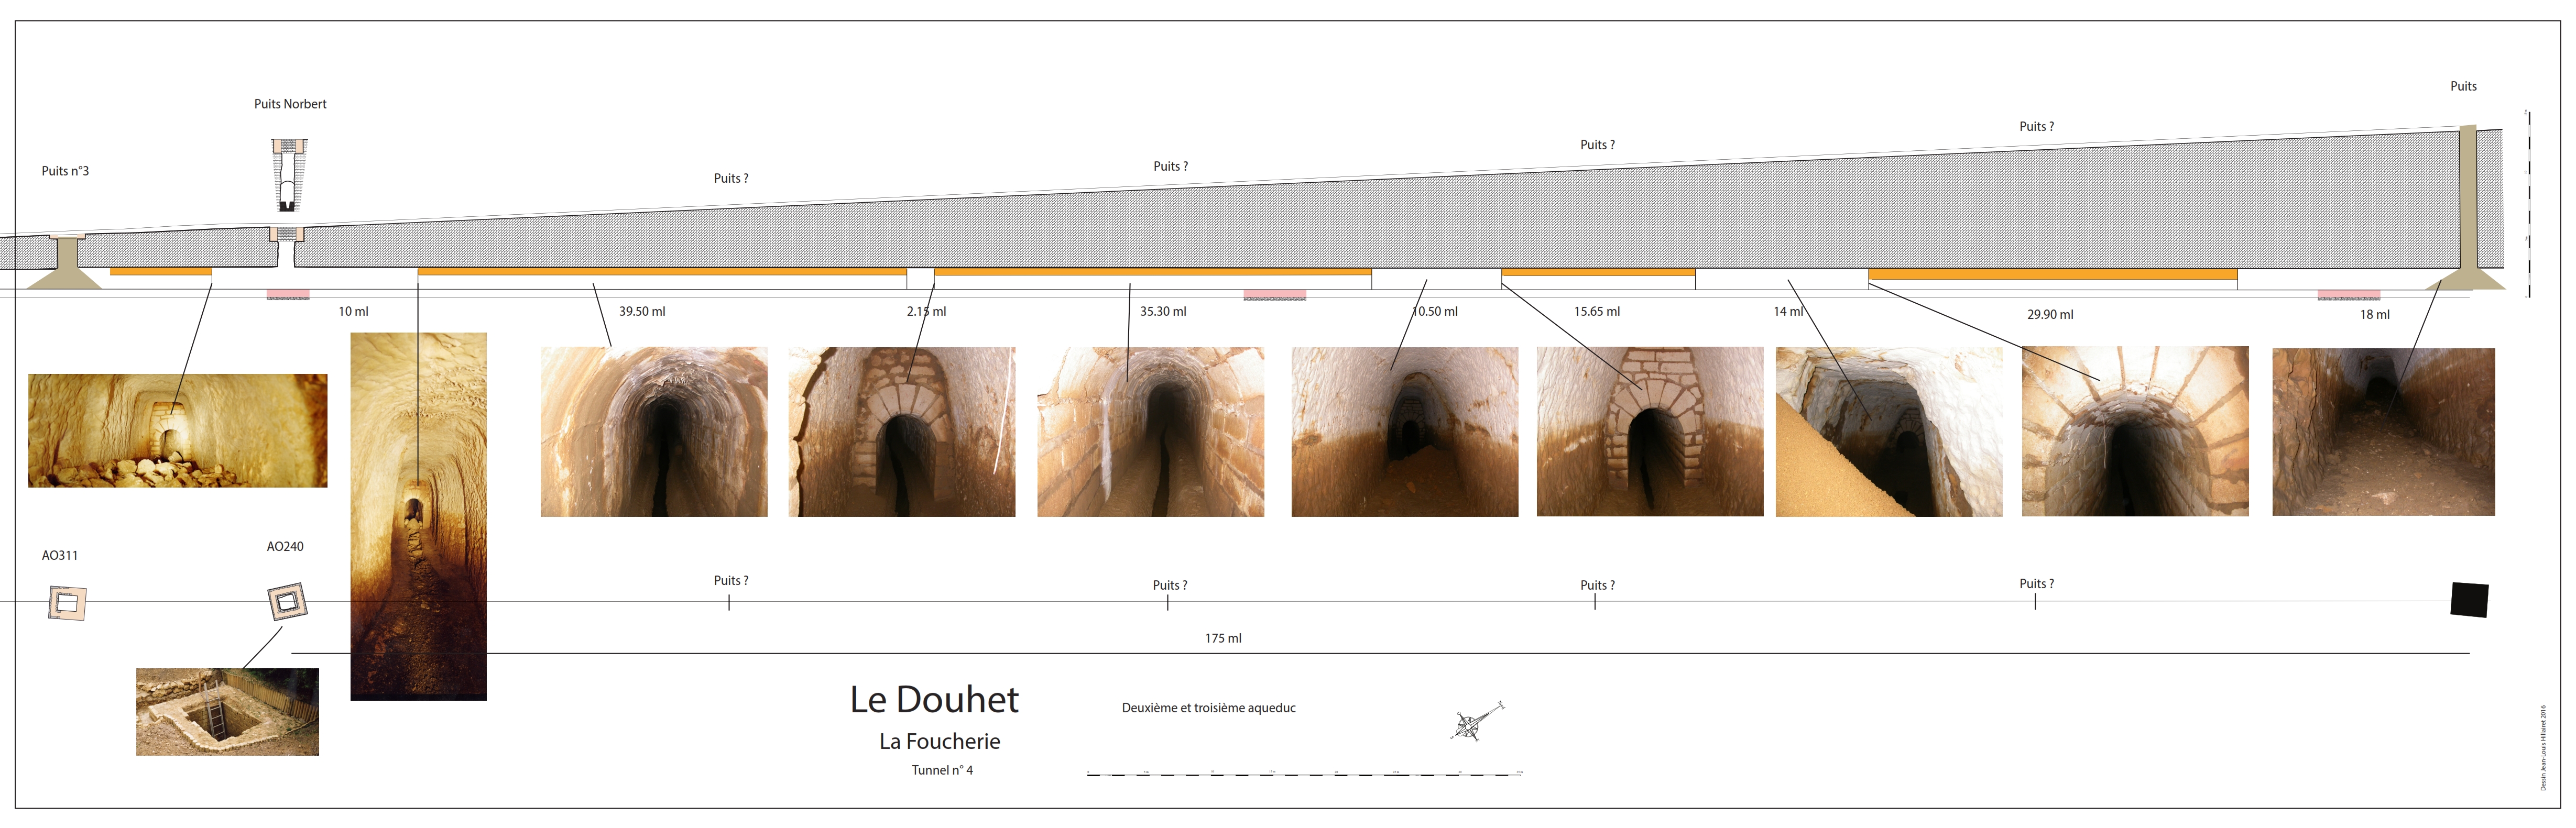 La Foucherie, Le Douhet : le tunnel n°4 de l’aqueduc gallo-romain par J.L Hillairet, archéologue